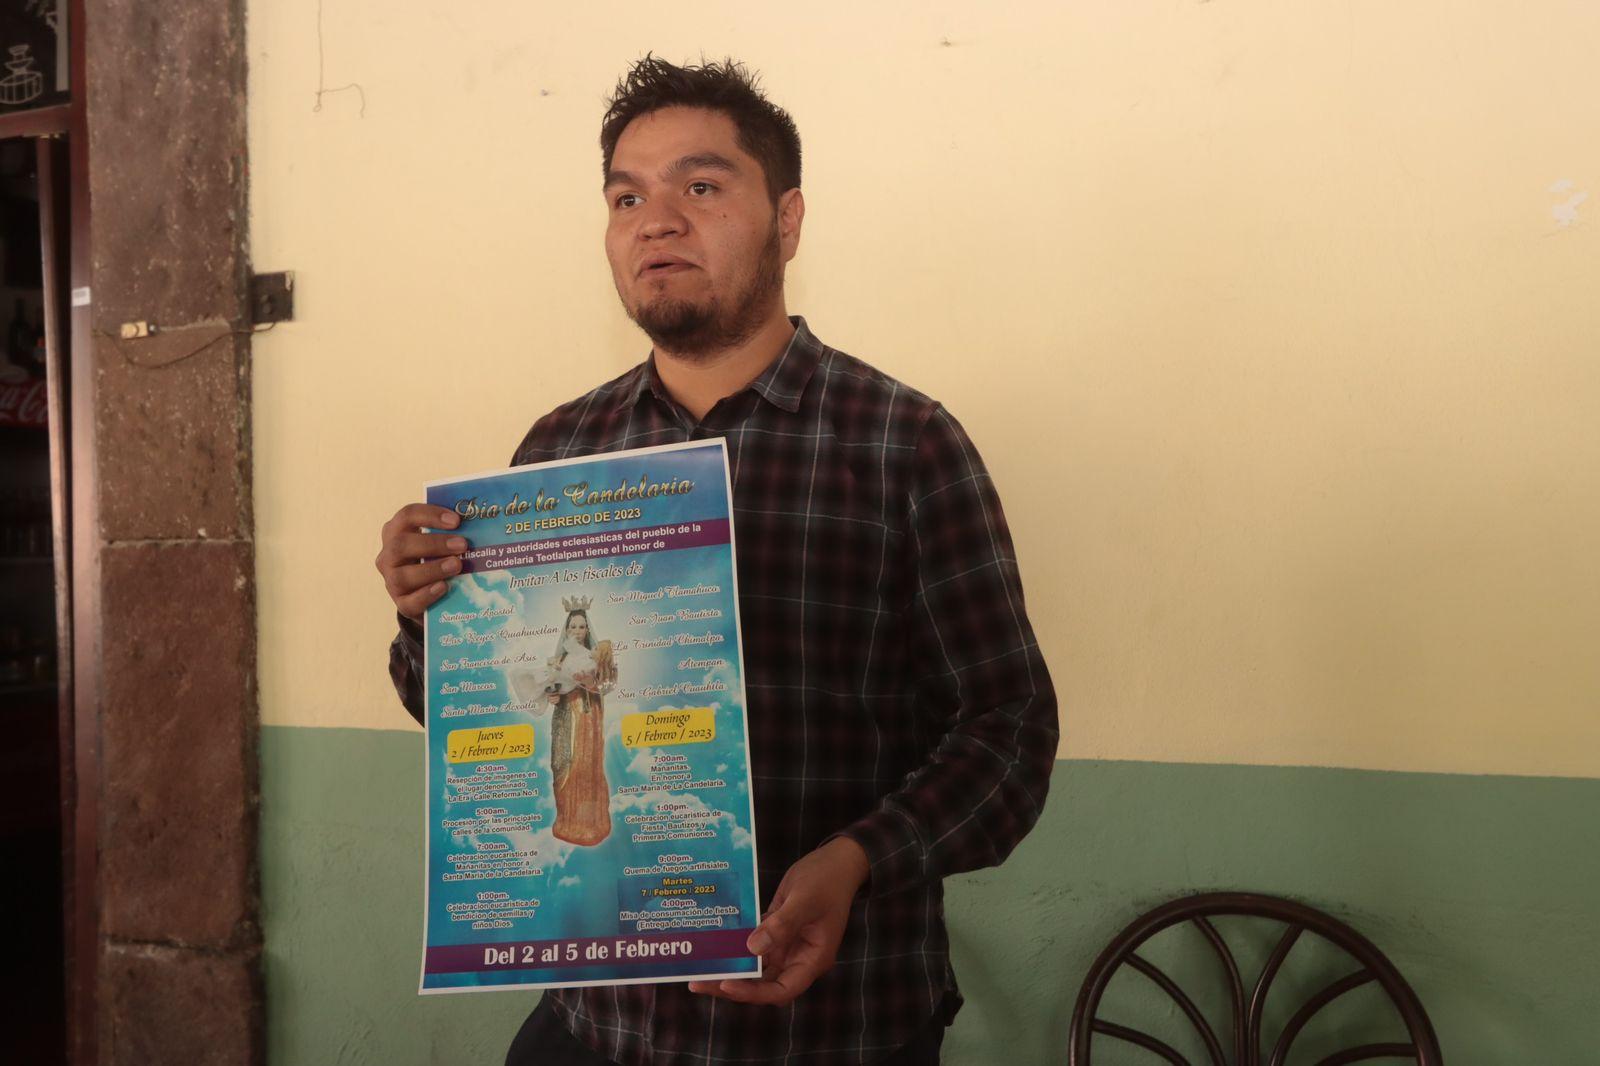 Anuncian 1er concurso del Tamal en la Candelaria Teotlalpan 